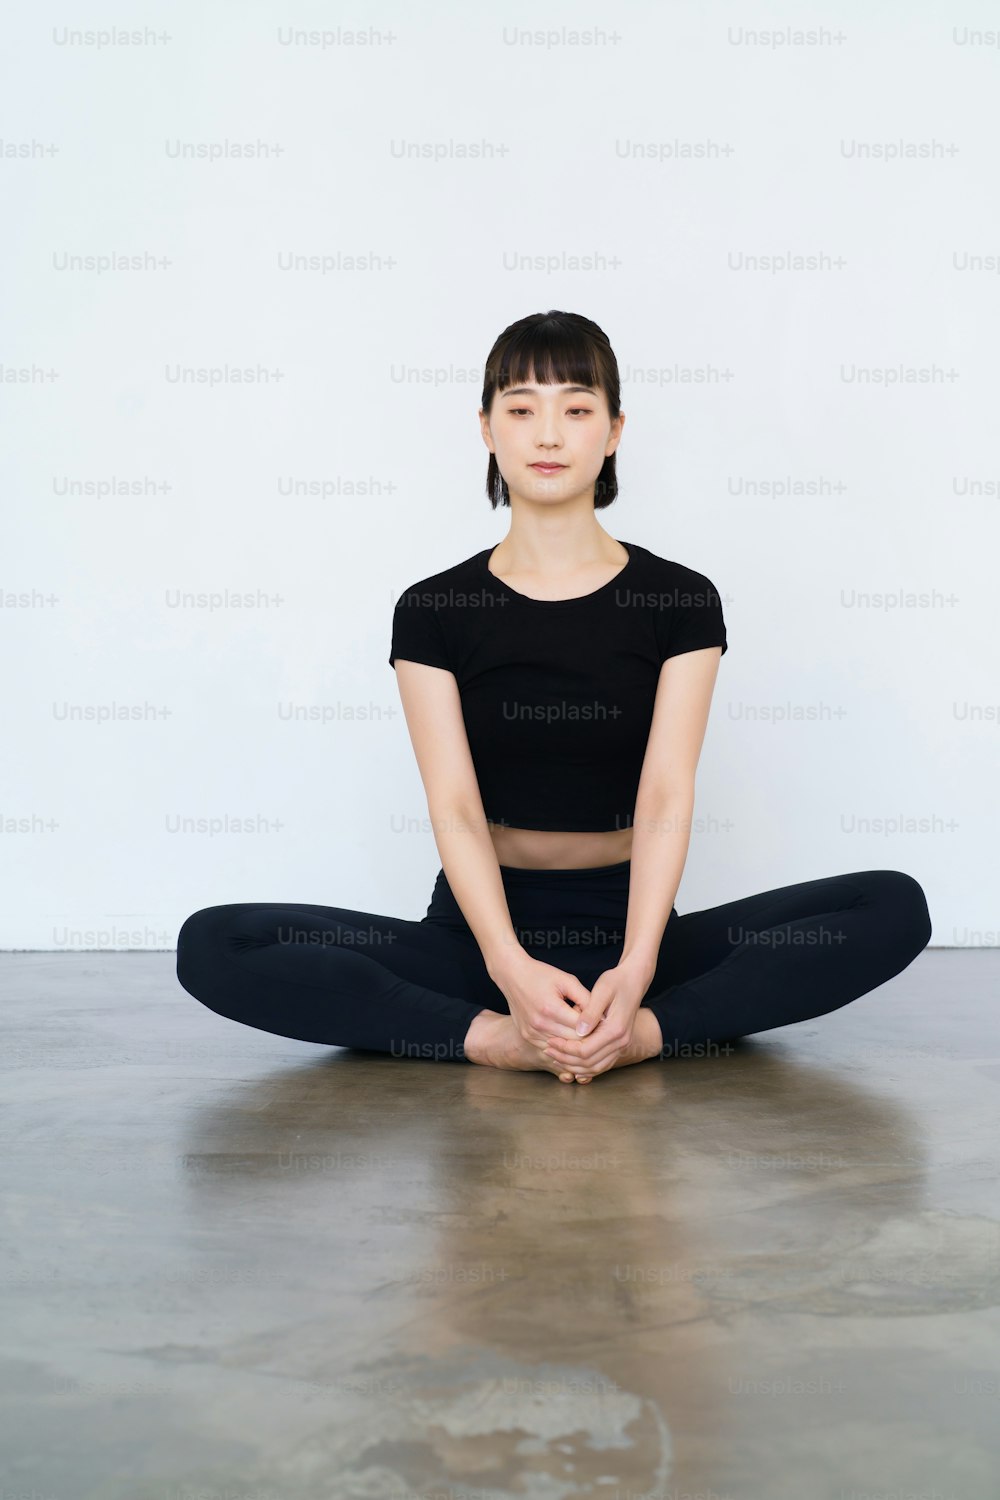 Uma mulher que faz yoga em uma única pose dentro de casa